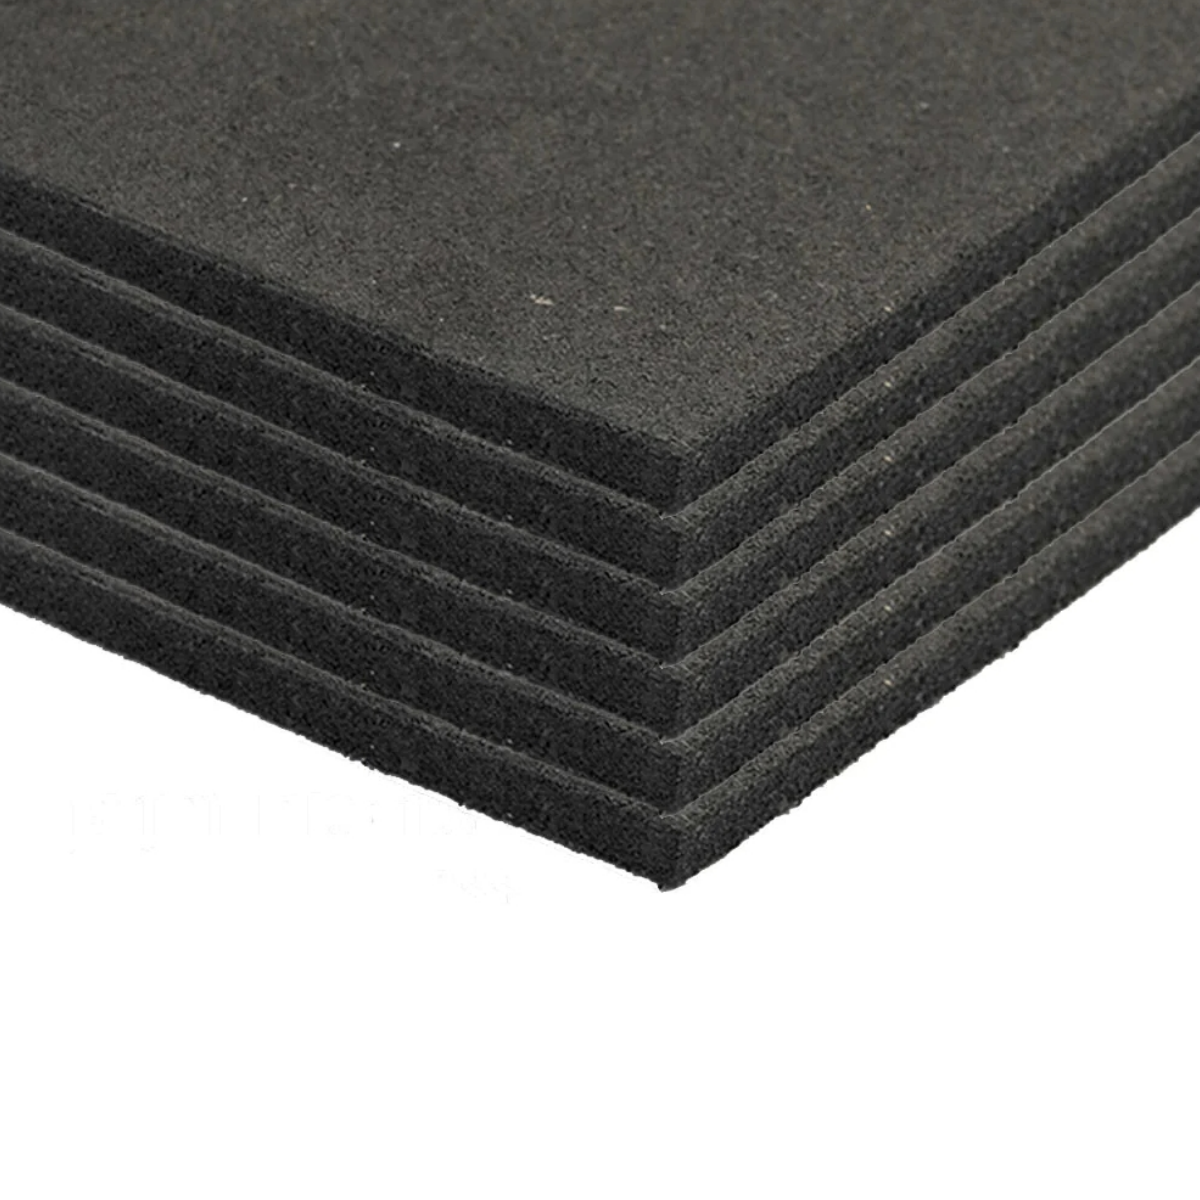 Rubber mats set